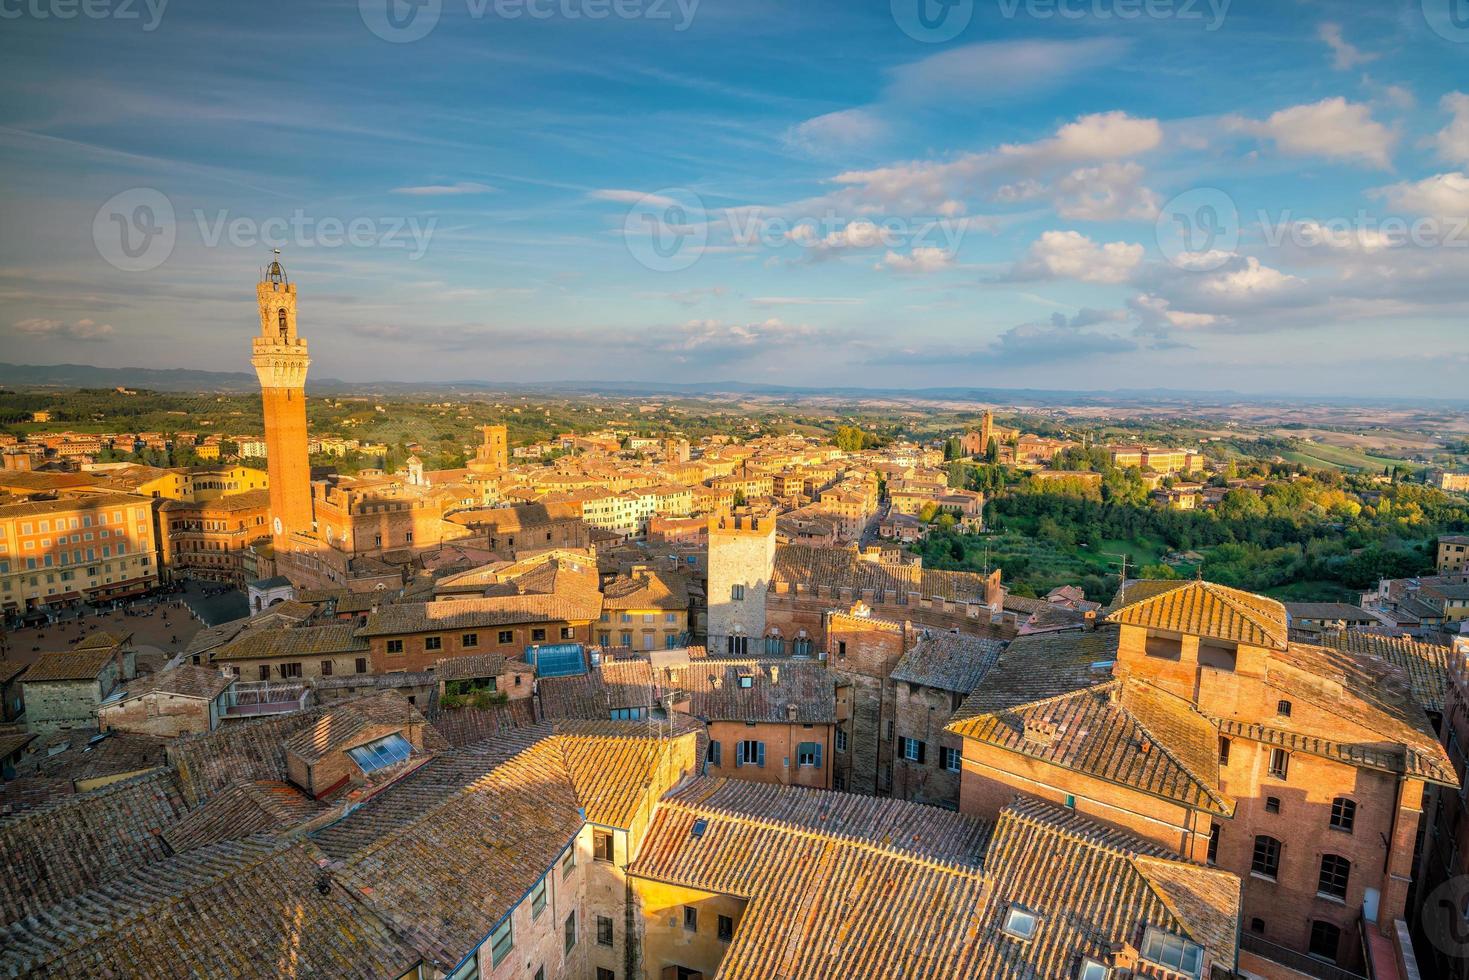 Downtown Siena skyline in Italy photo